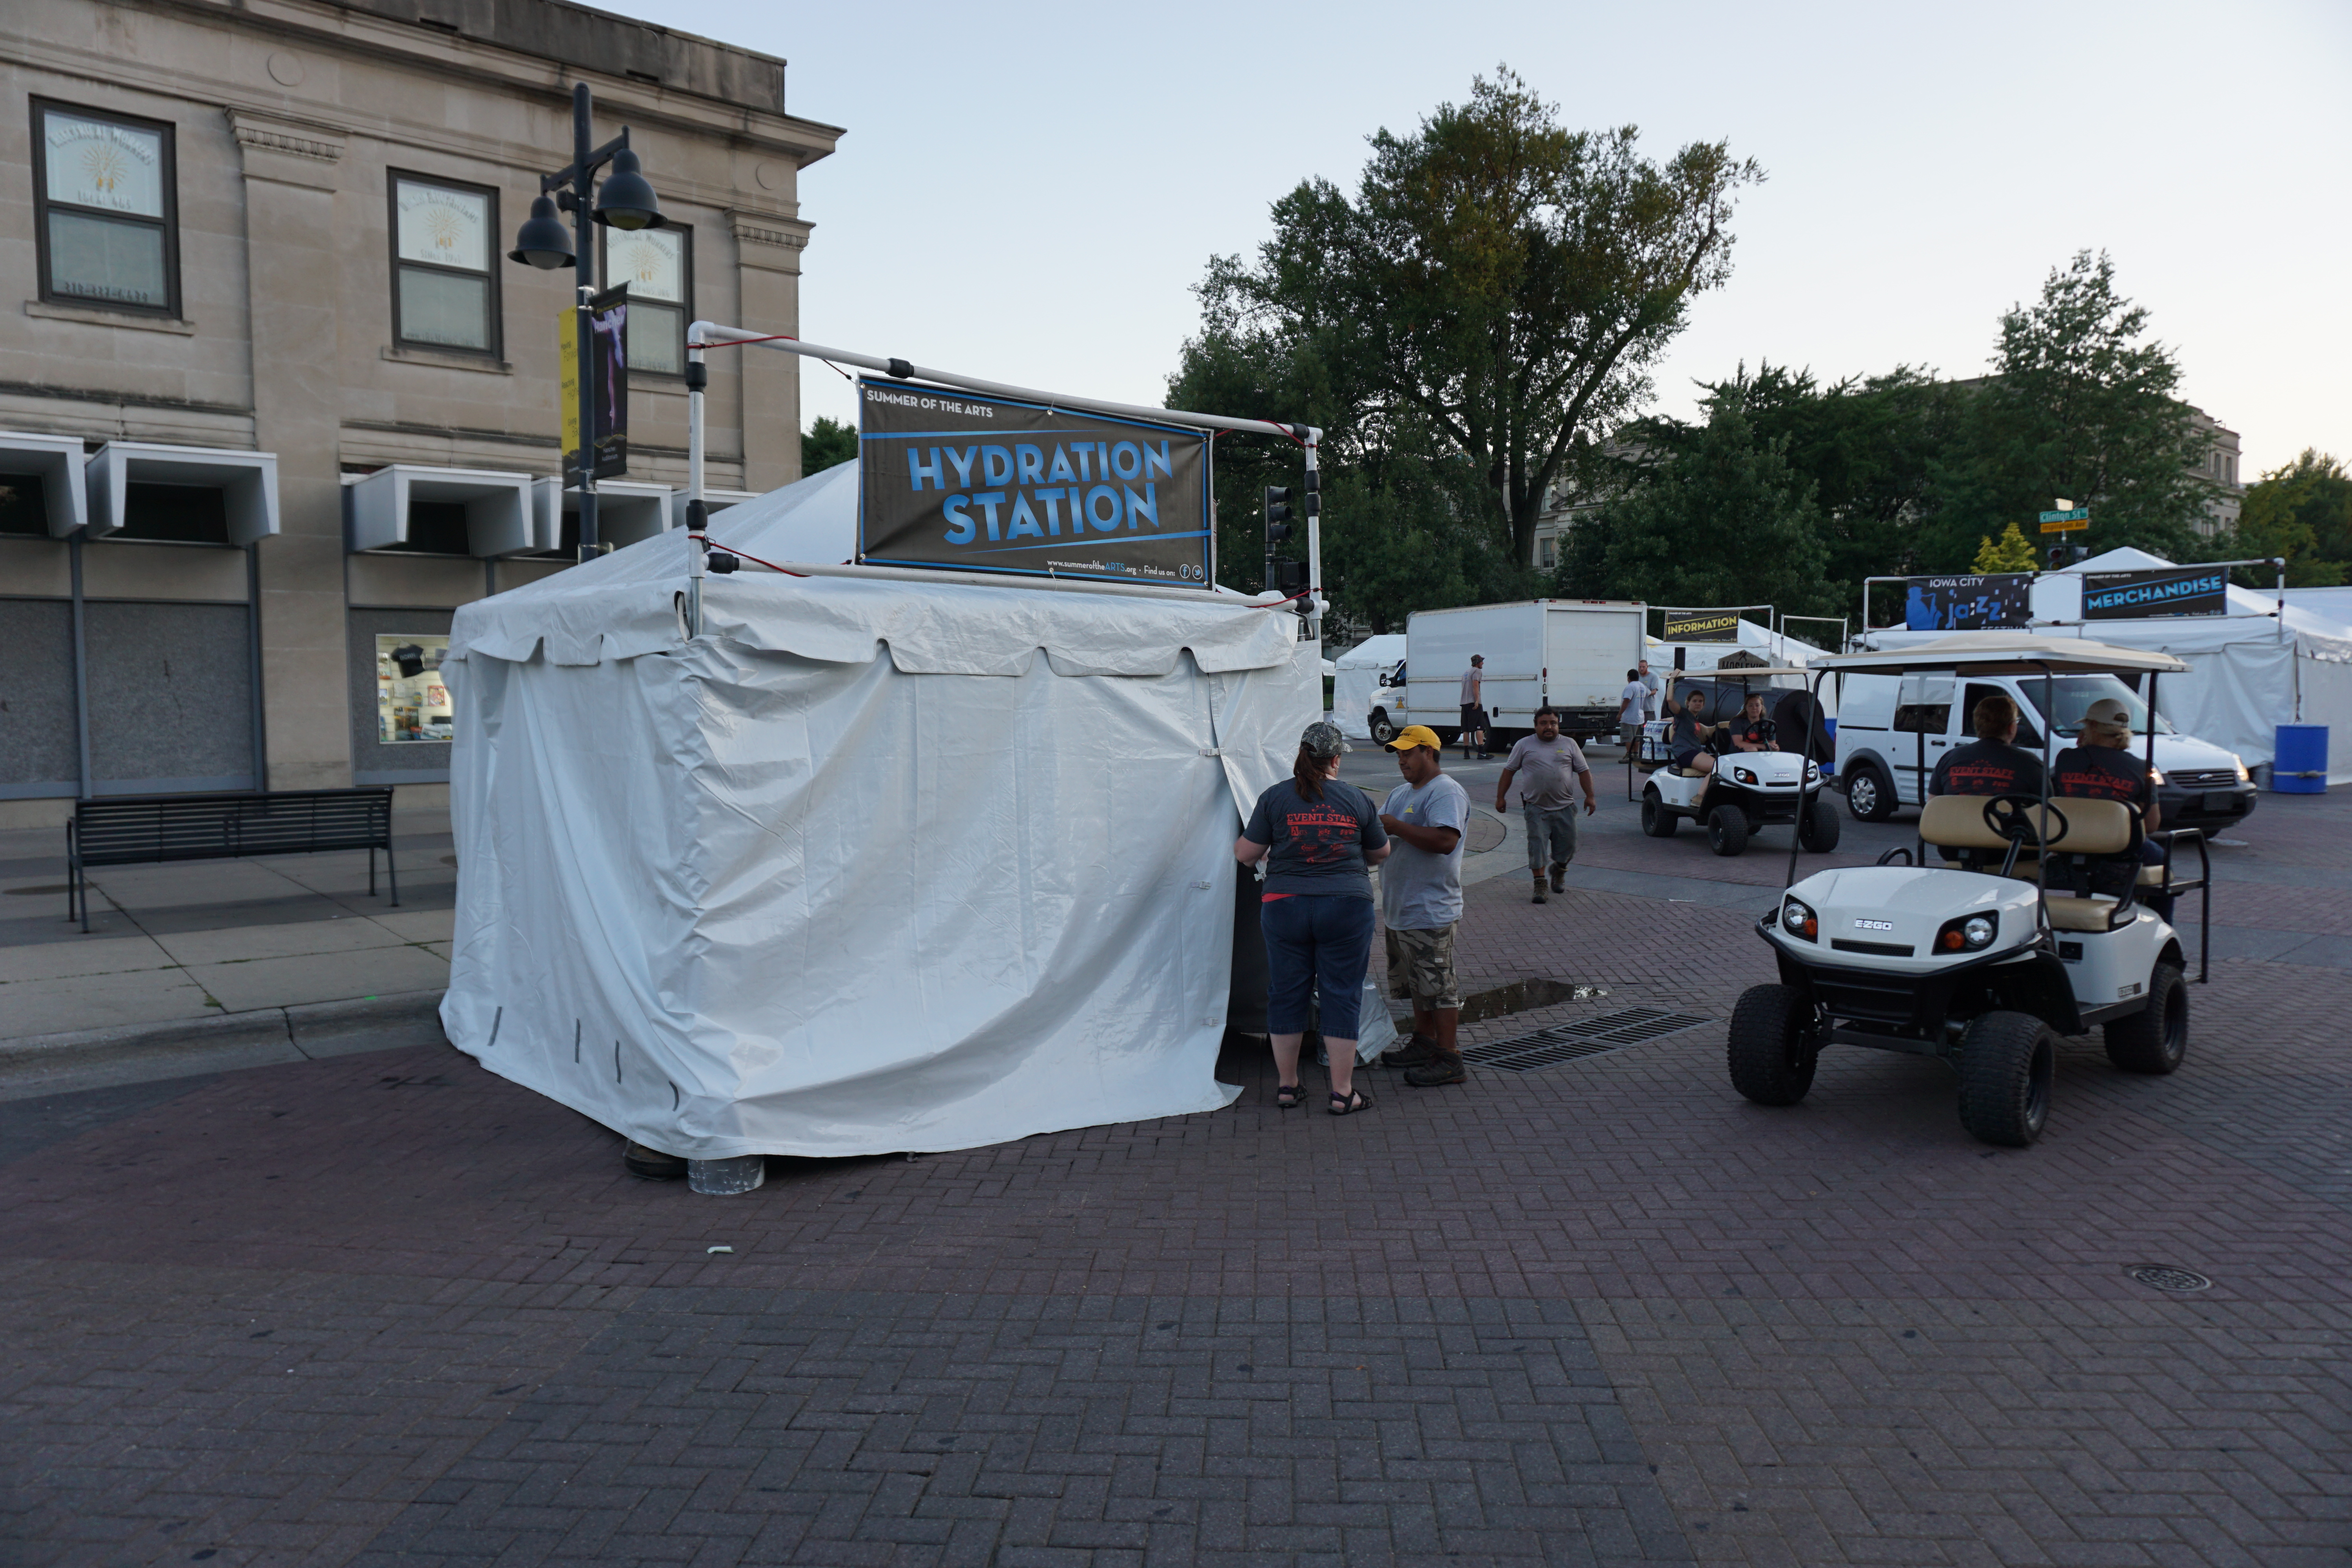 Hydration station tent at Iowa Jazz Festival in Iowa City